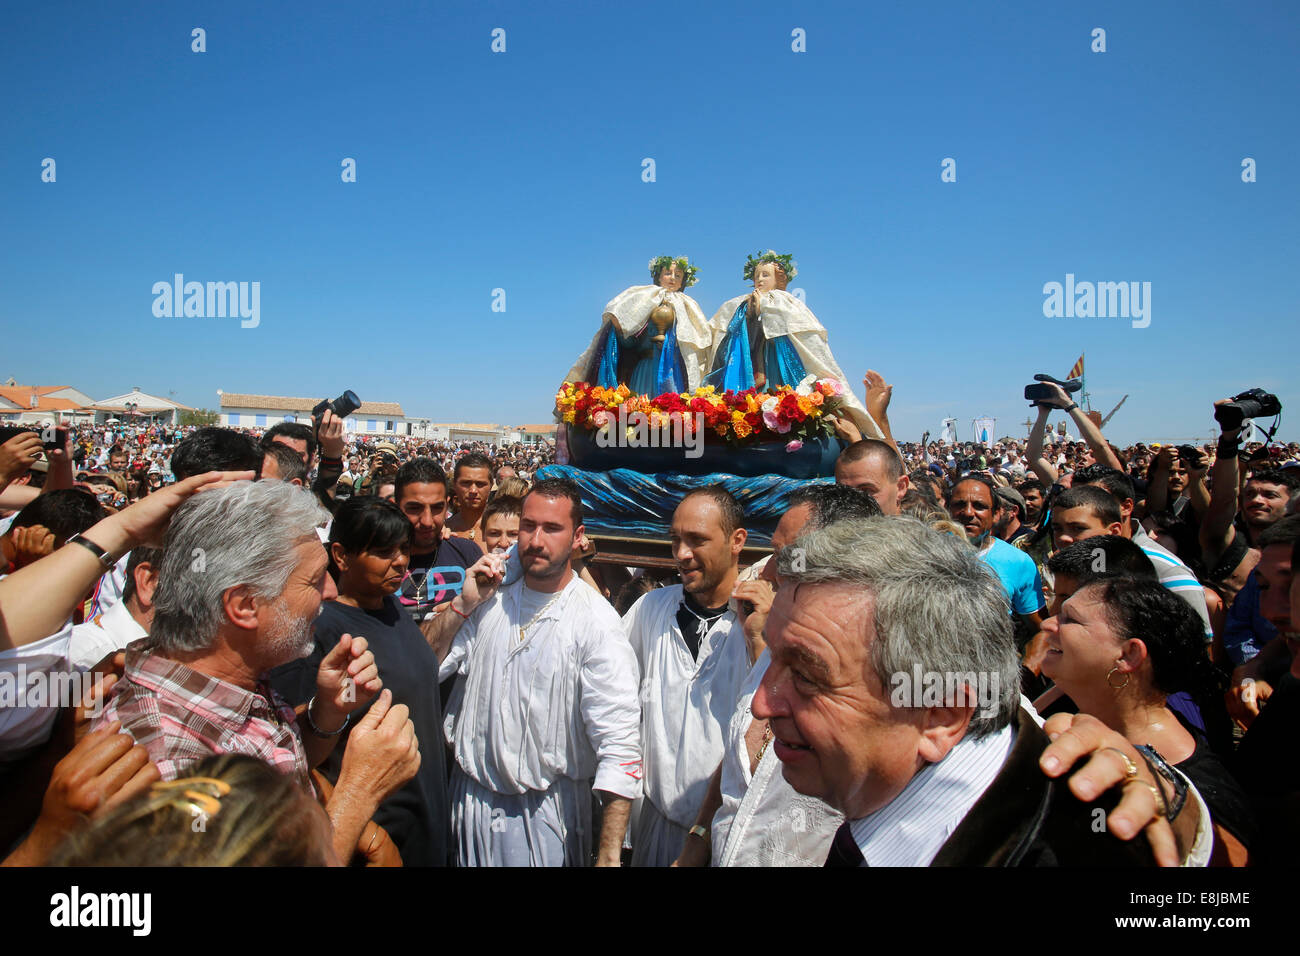 Pellegrinaggio degli zingari a les Saintes-Marie-de-la-Mer. Processione con le statue dei santi patroni Marie JacobŽ et Marie SalomŽ Foto Stock